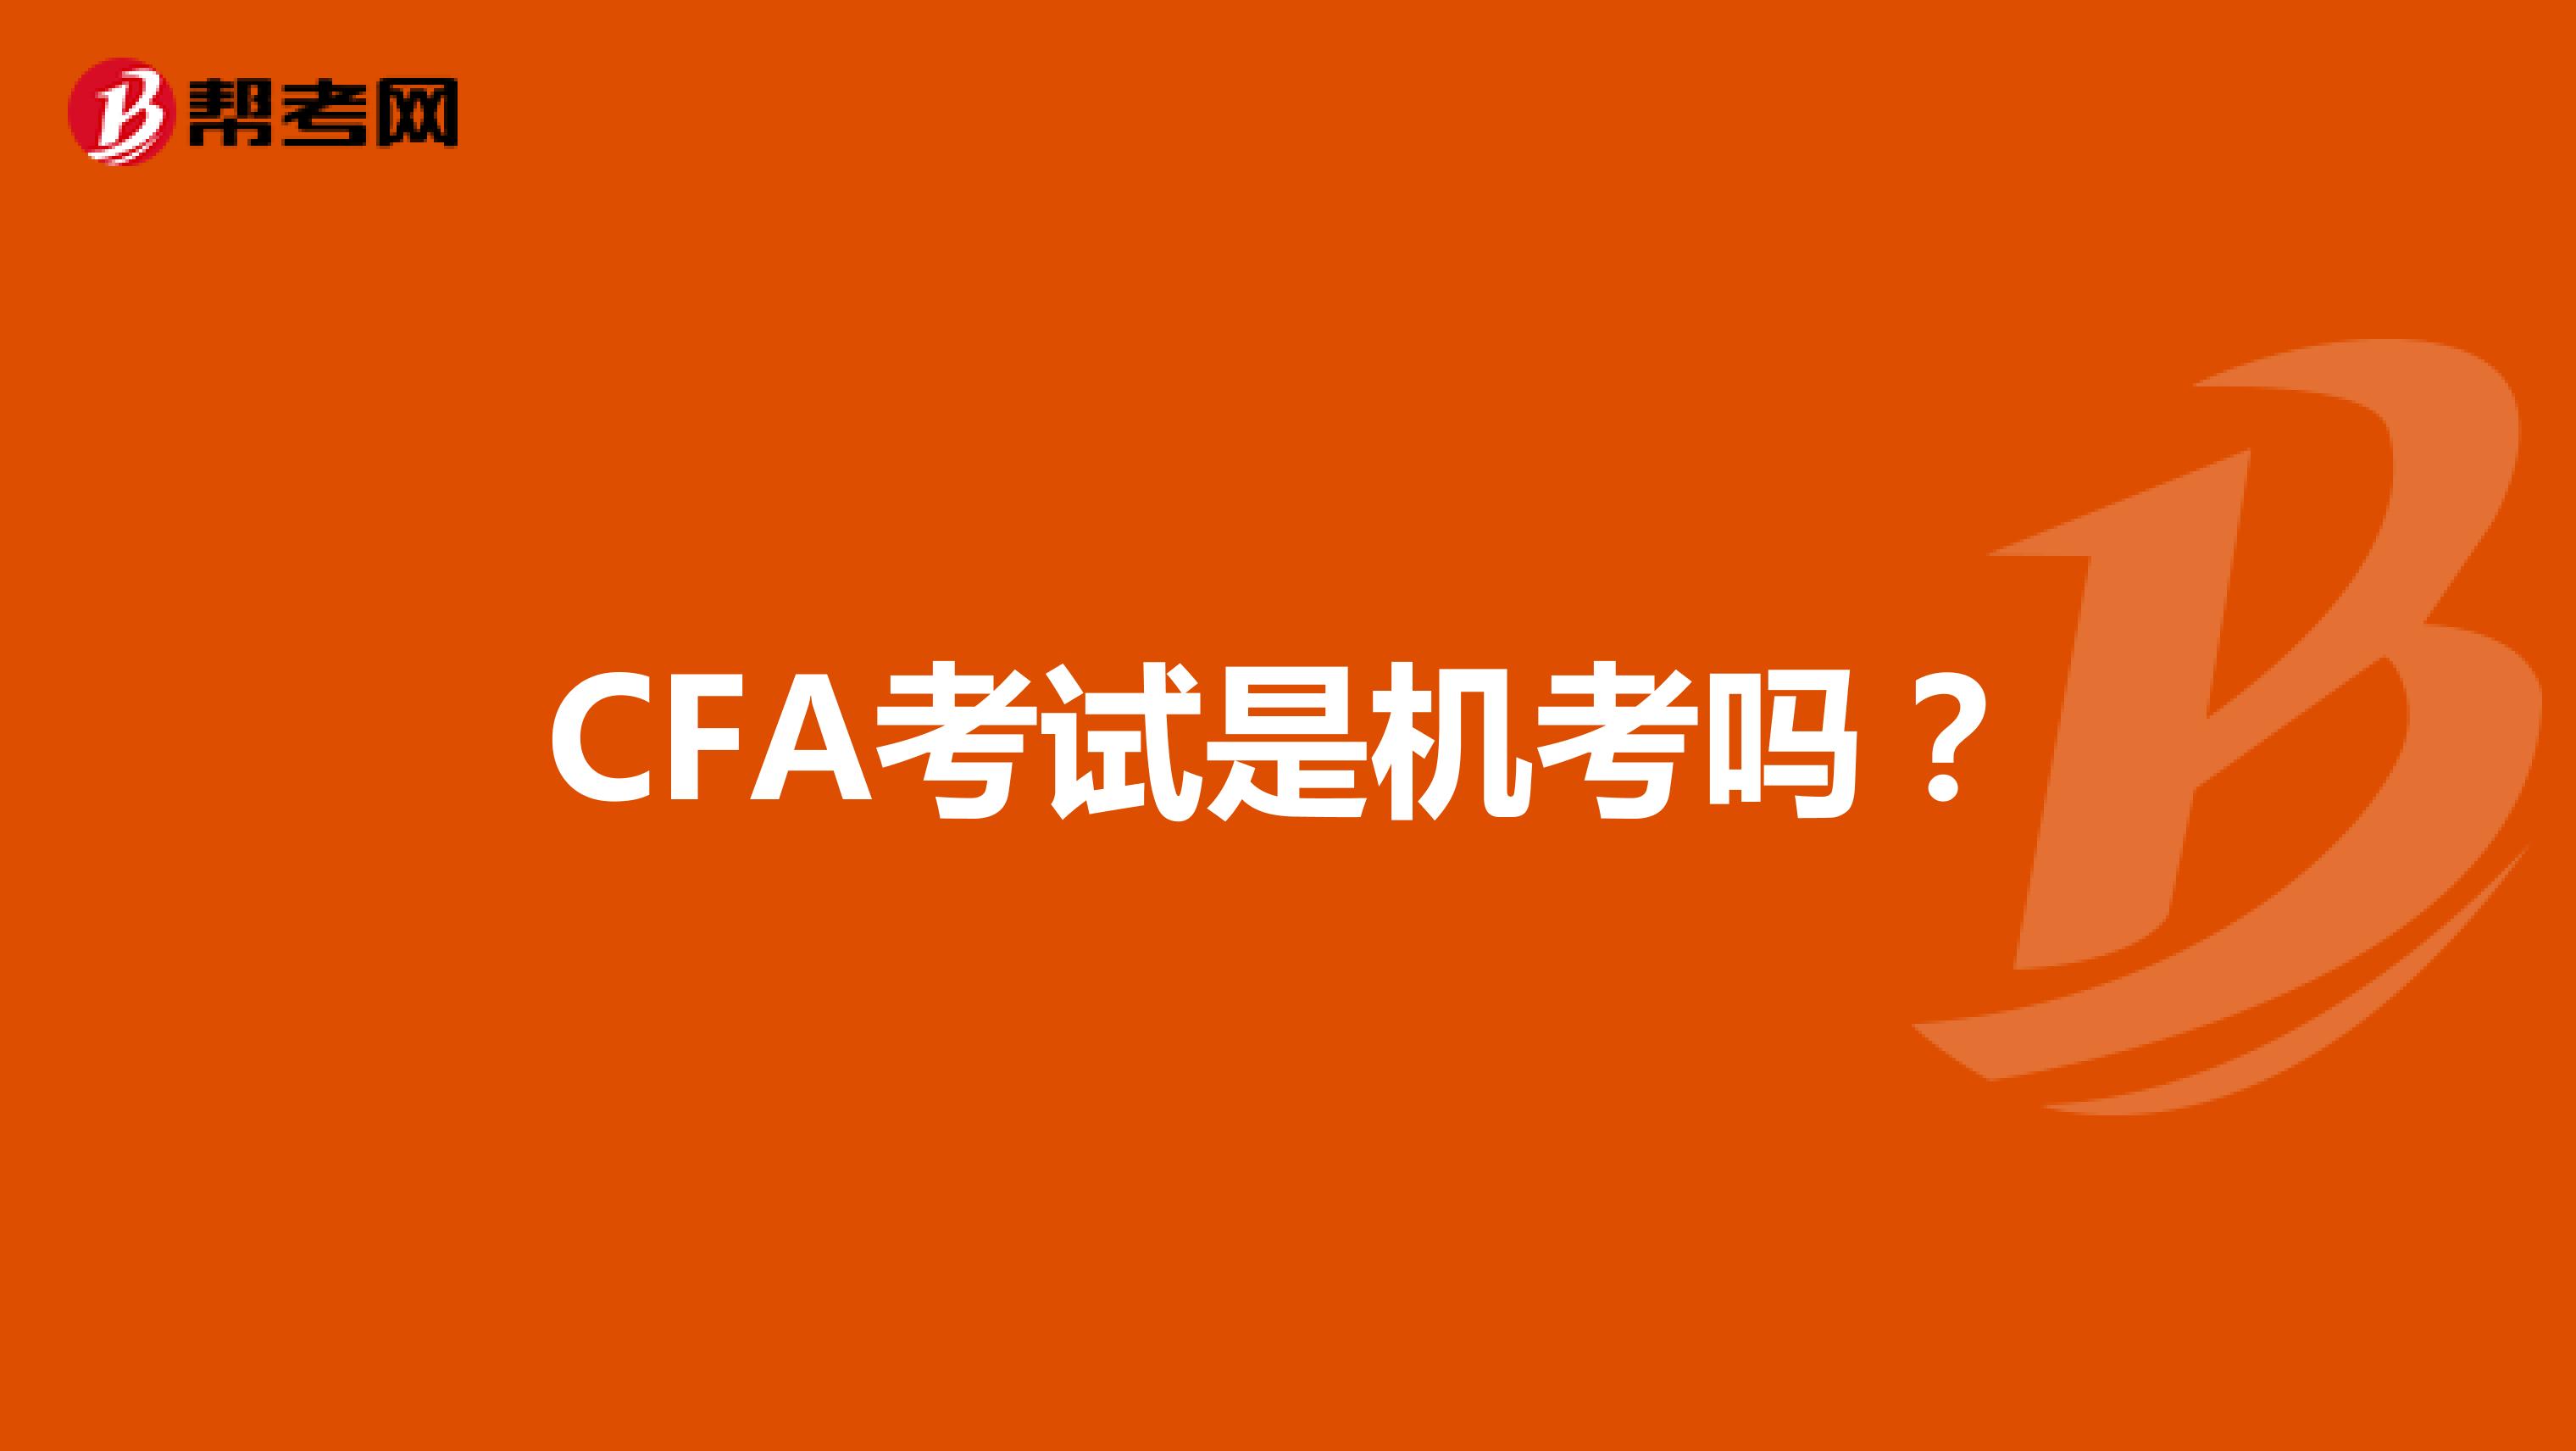 CFA考试是机考吗？